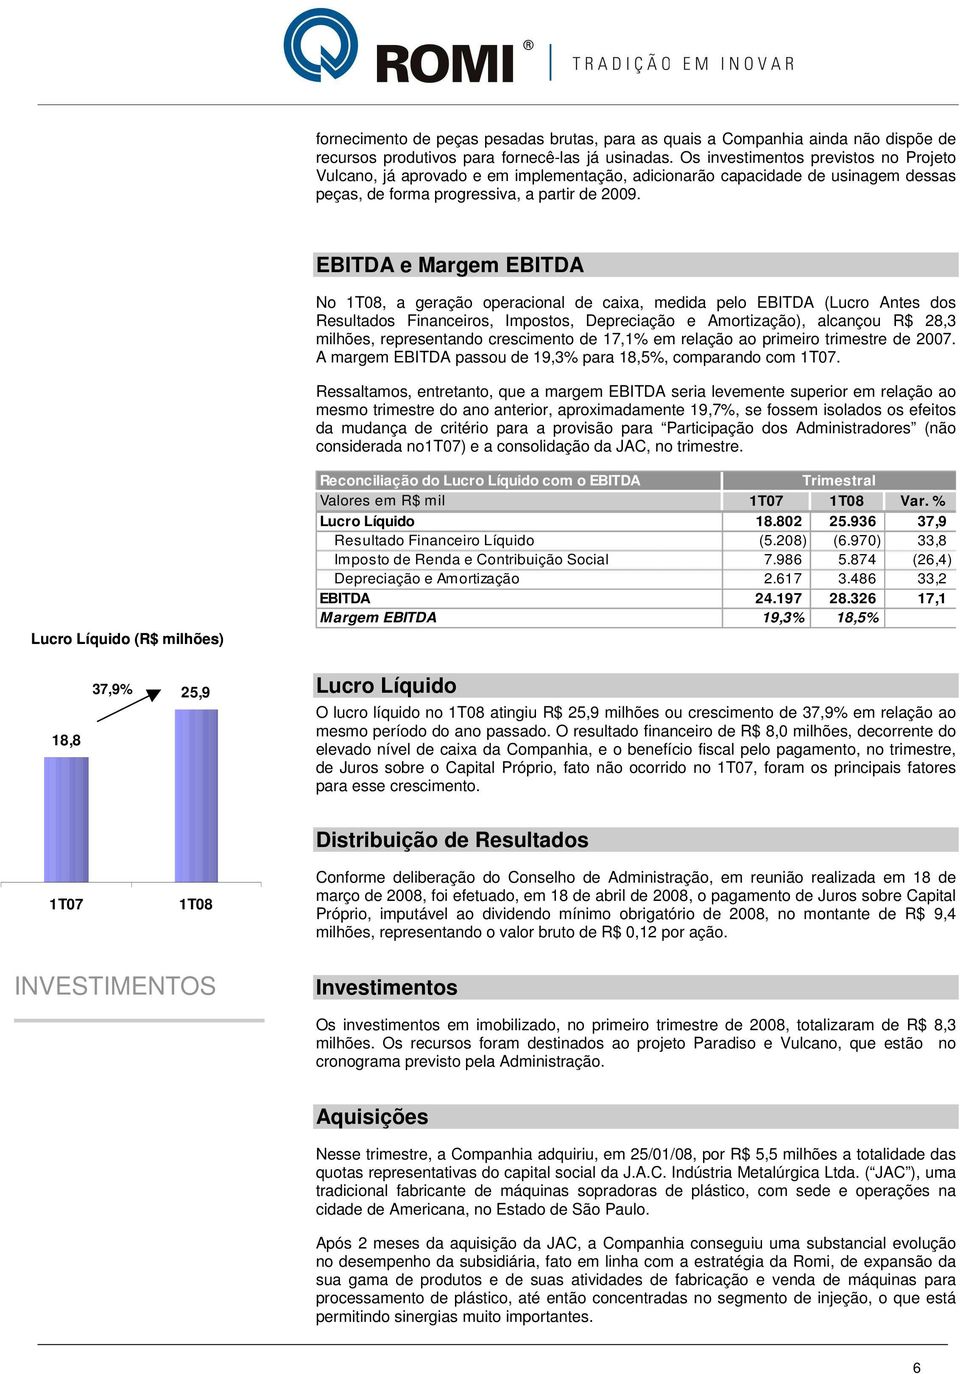 EBITDA e Margem EBITDA No 1T08, a geração operacional de caixa, medida pelo EBITDA (Lucro Antes dos Resultados Financeiros, Impostos, Depreciação e Amortização), alcançou R$ 28,3 milhões,